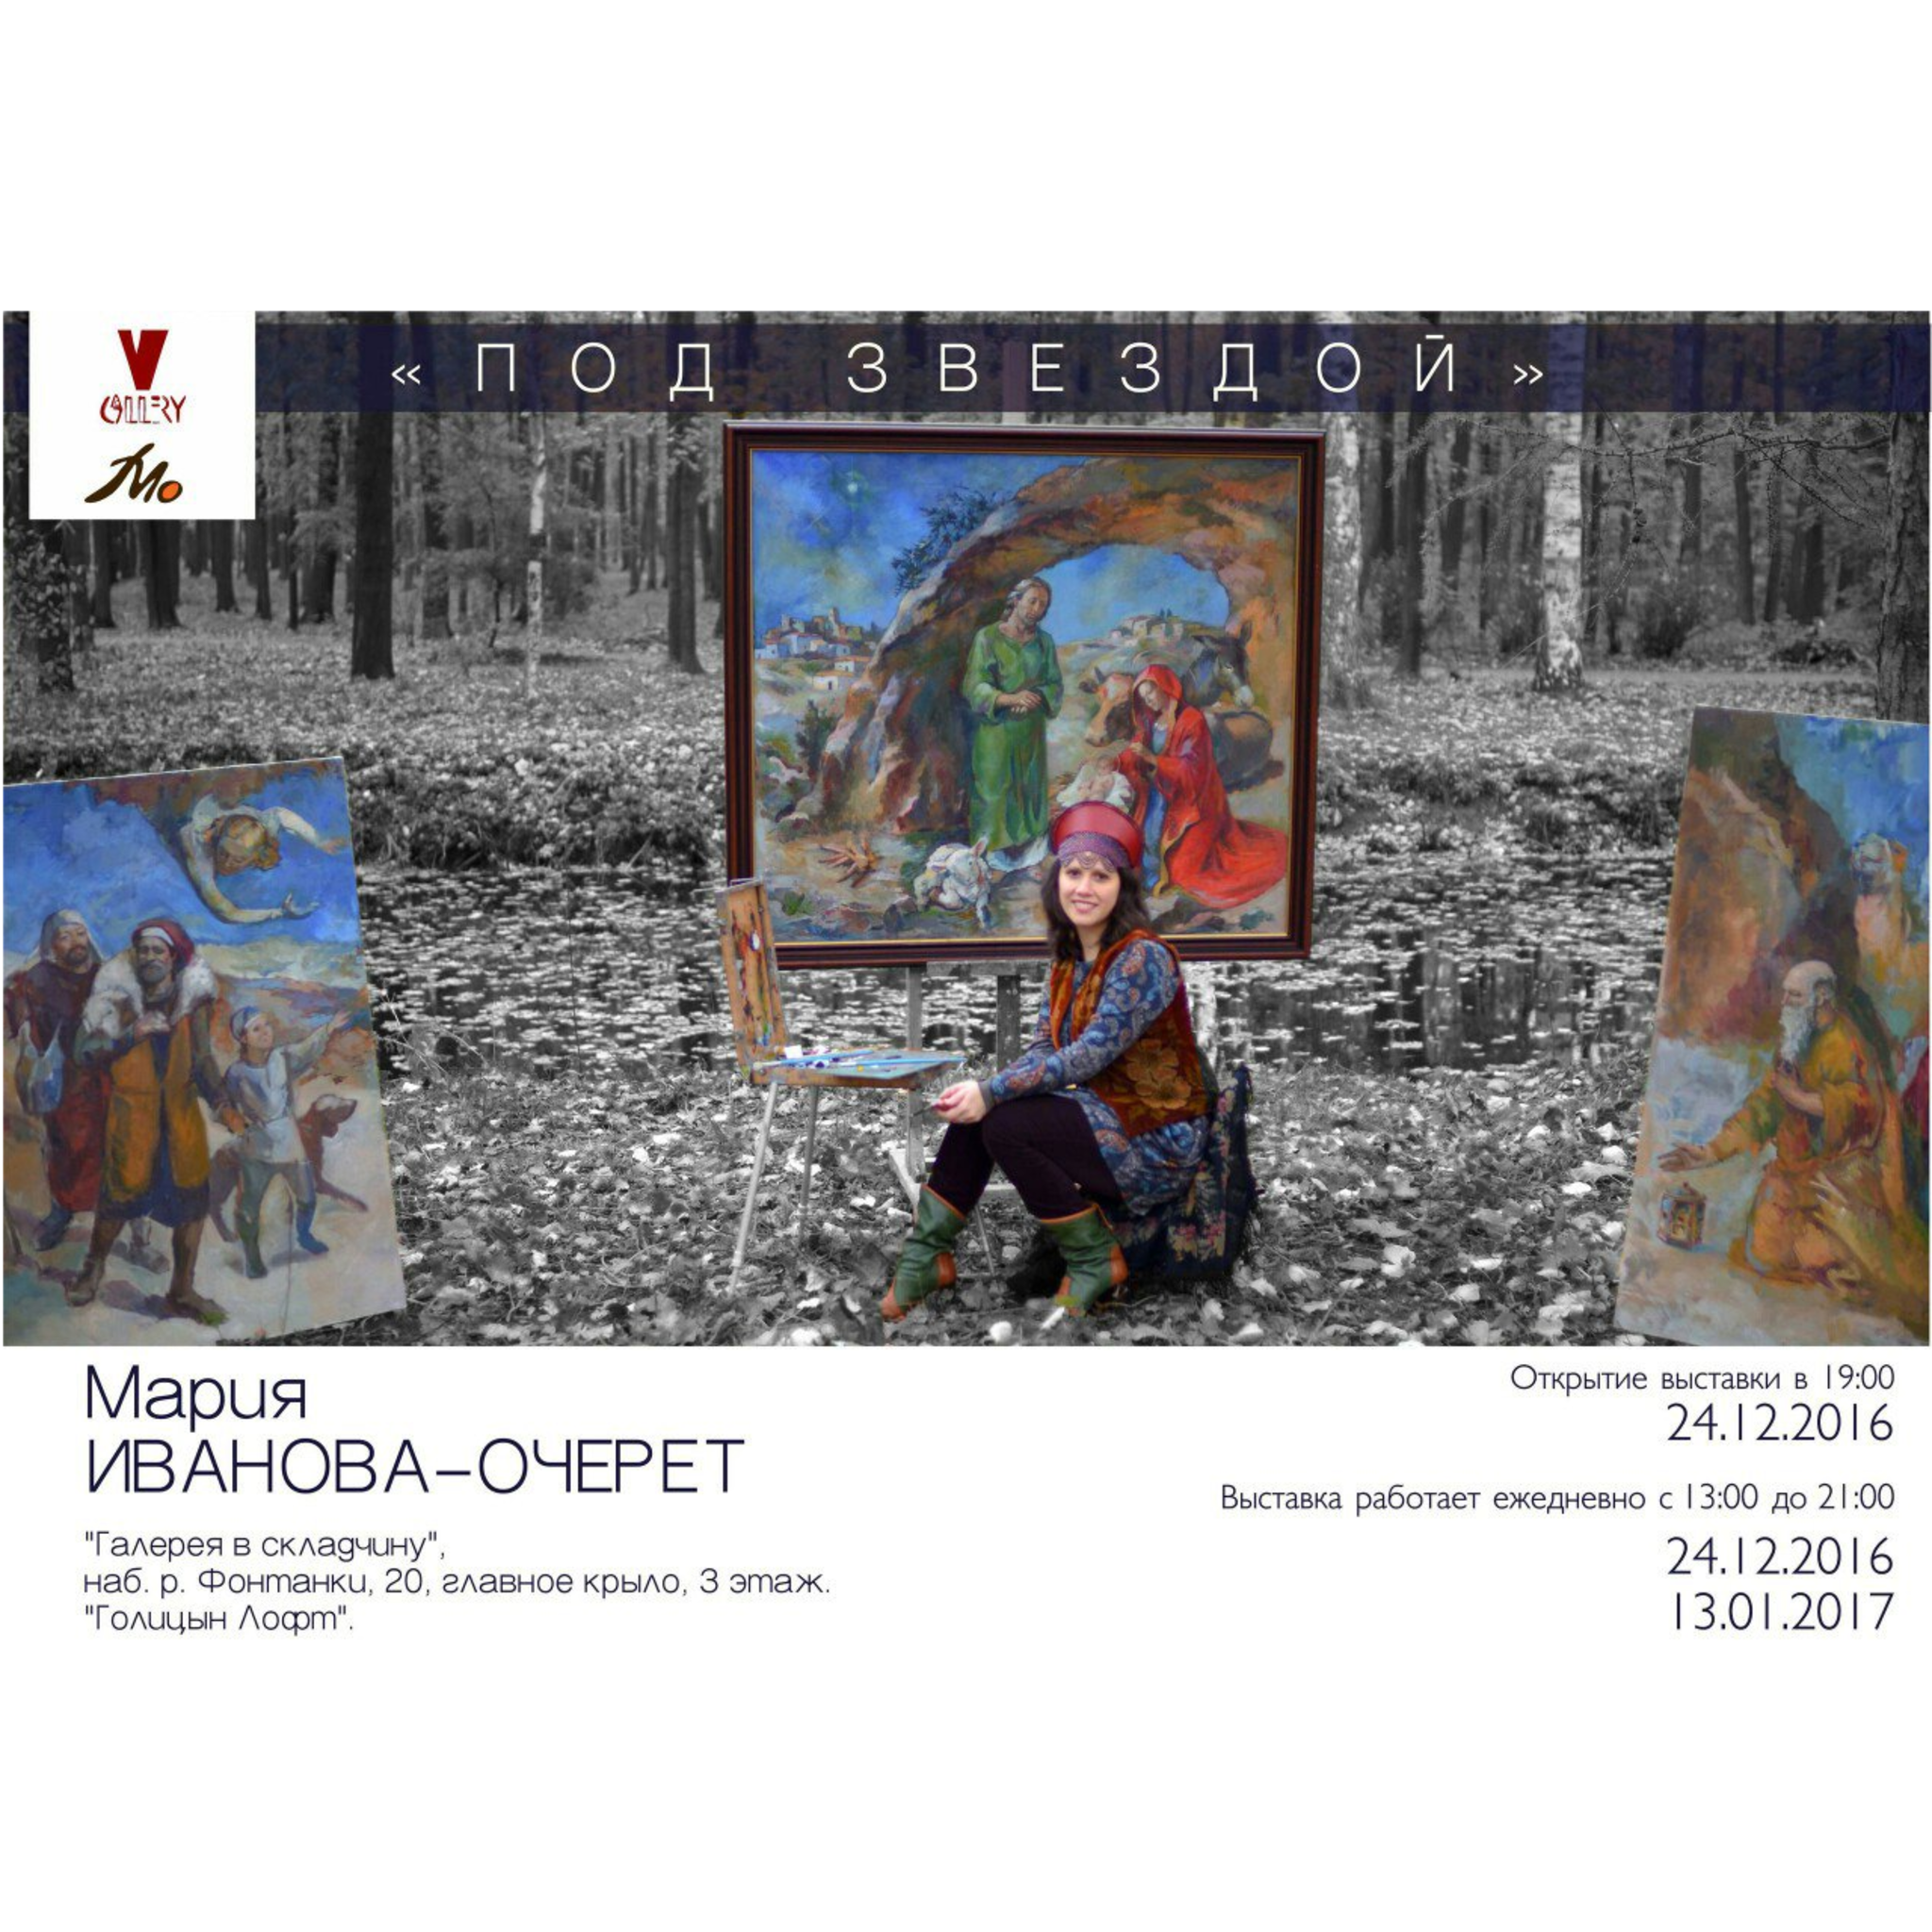 Maria Ivanova-Ocheret The exhibition Under the Star